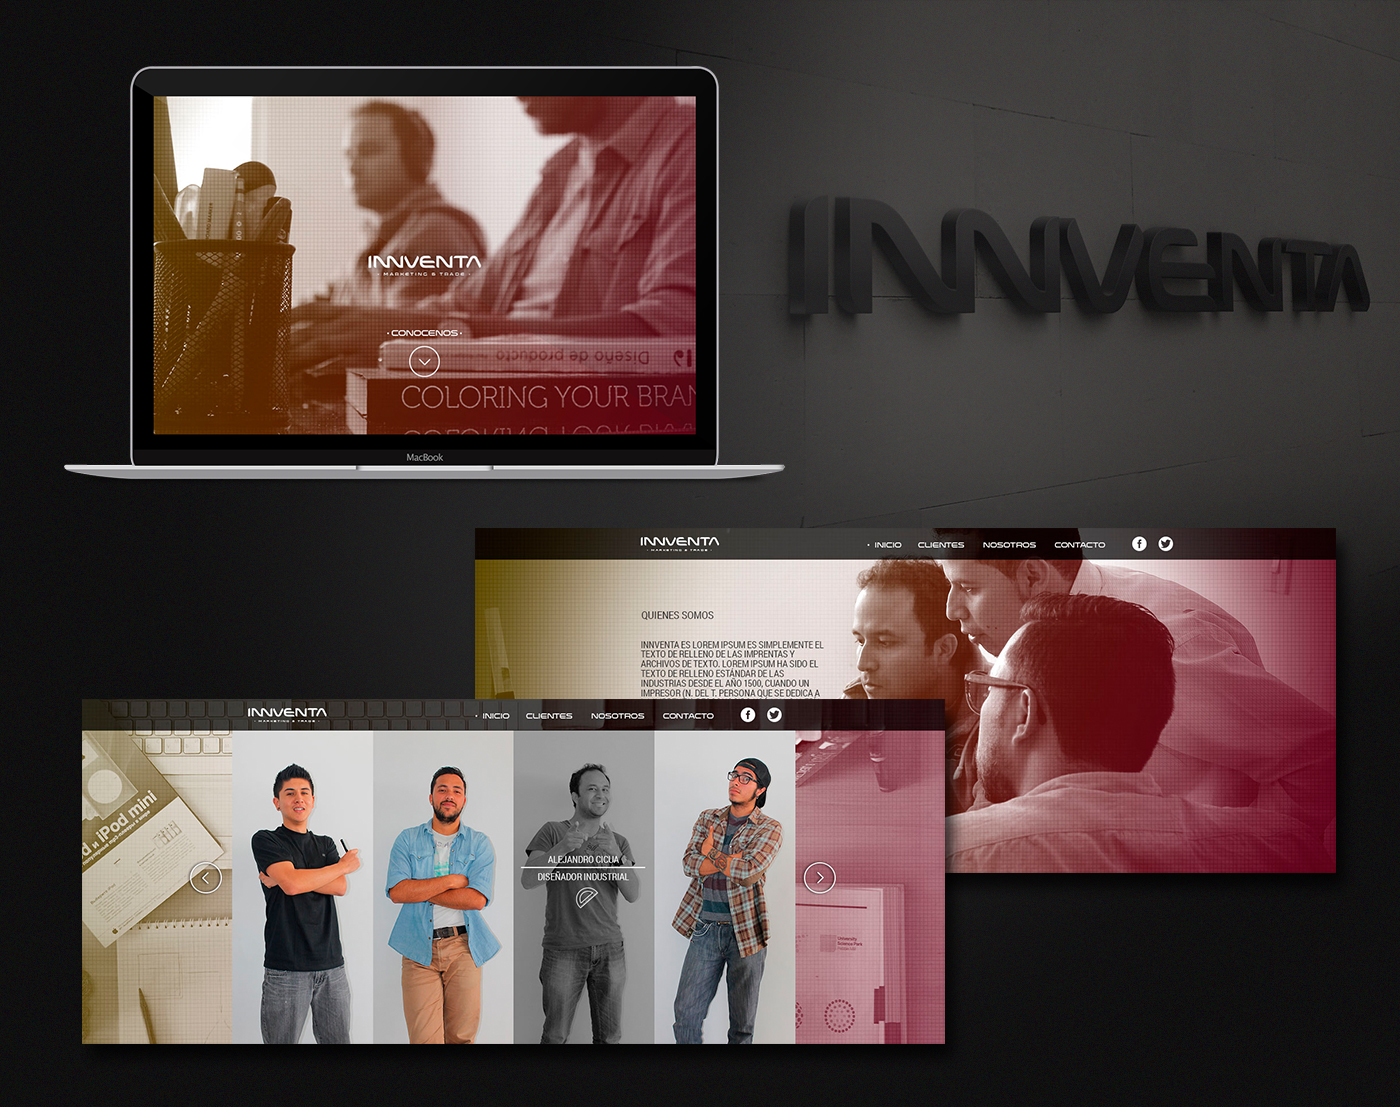 Sony comparamejor webcolombia Web Diseño web Diagramación web colors tens innventa